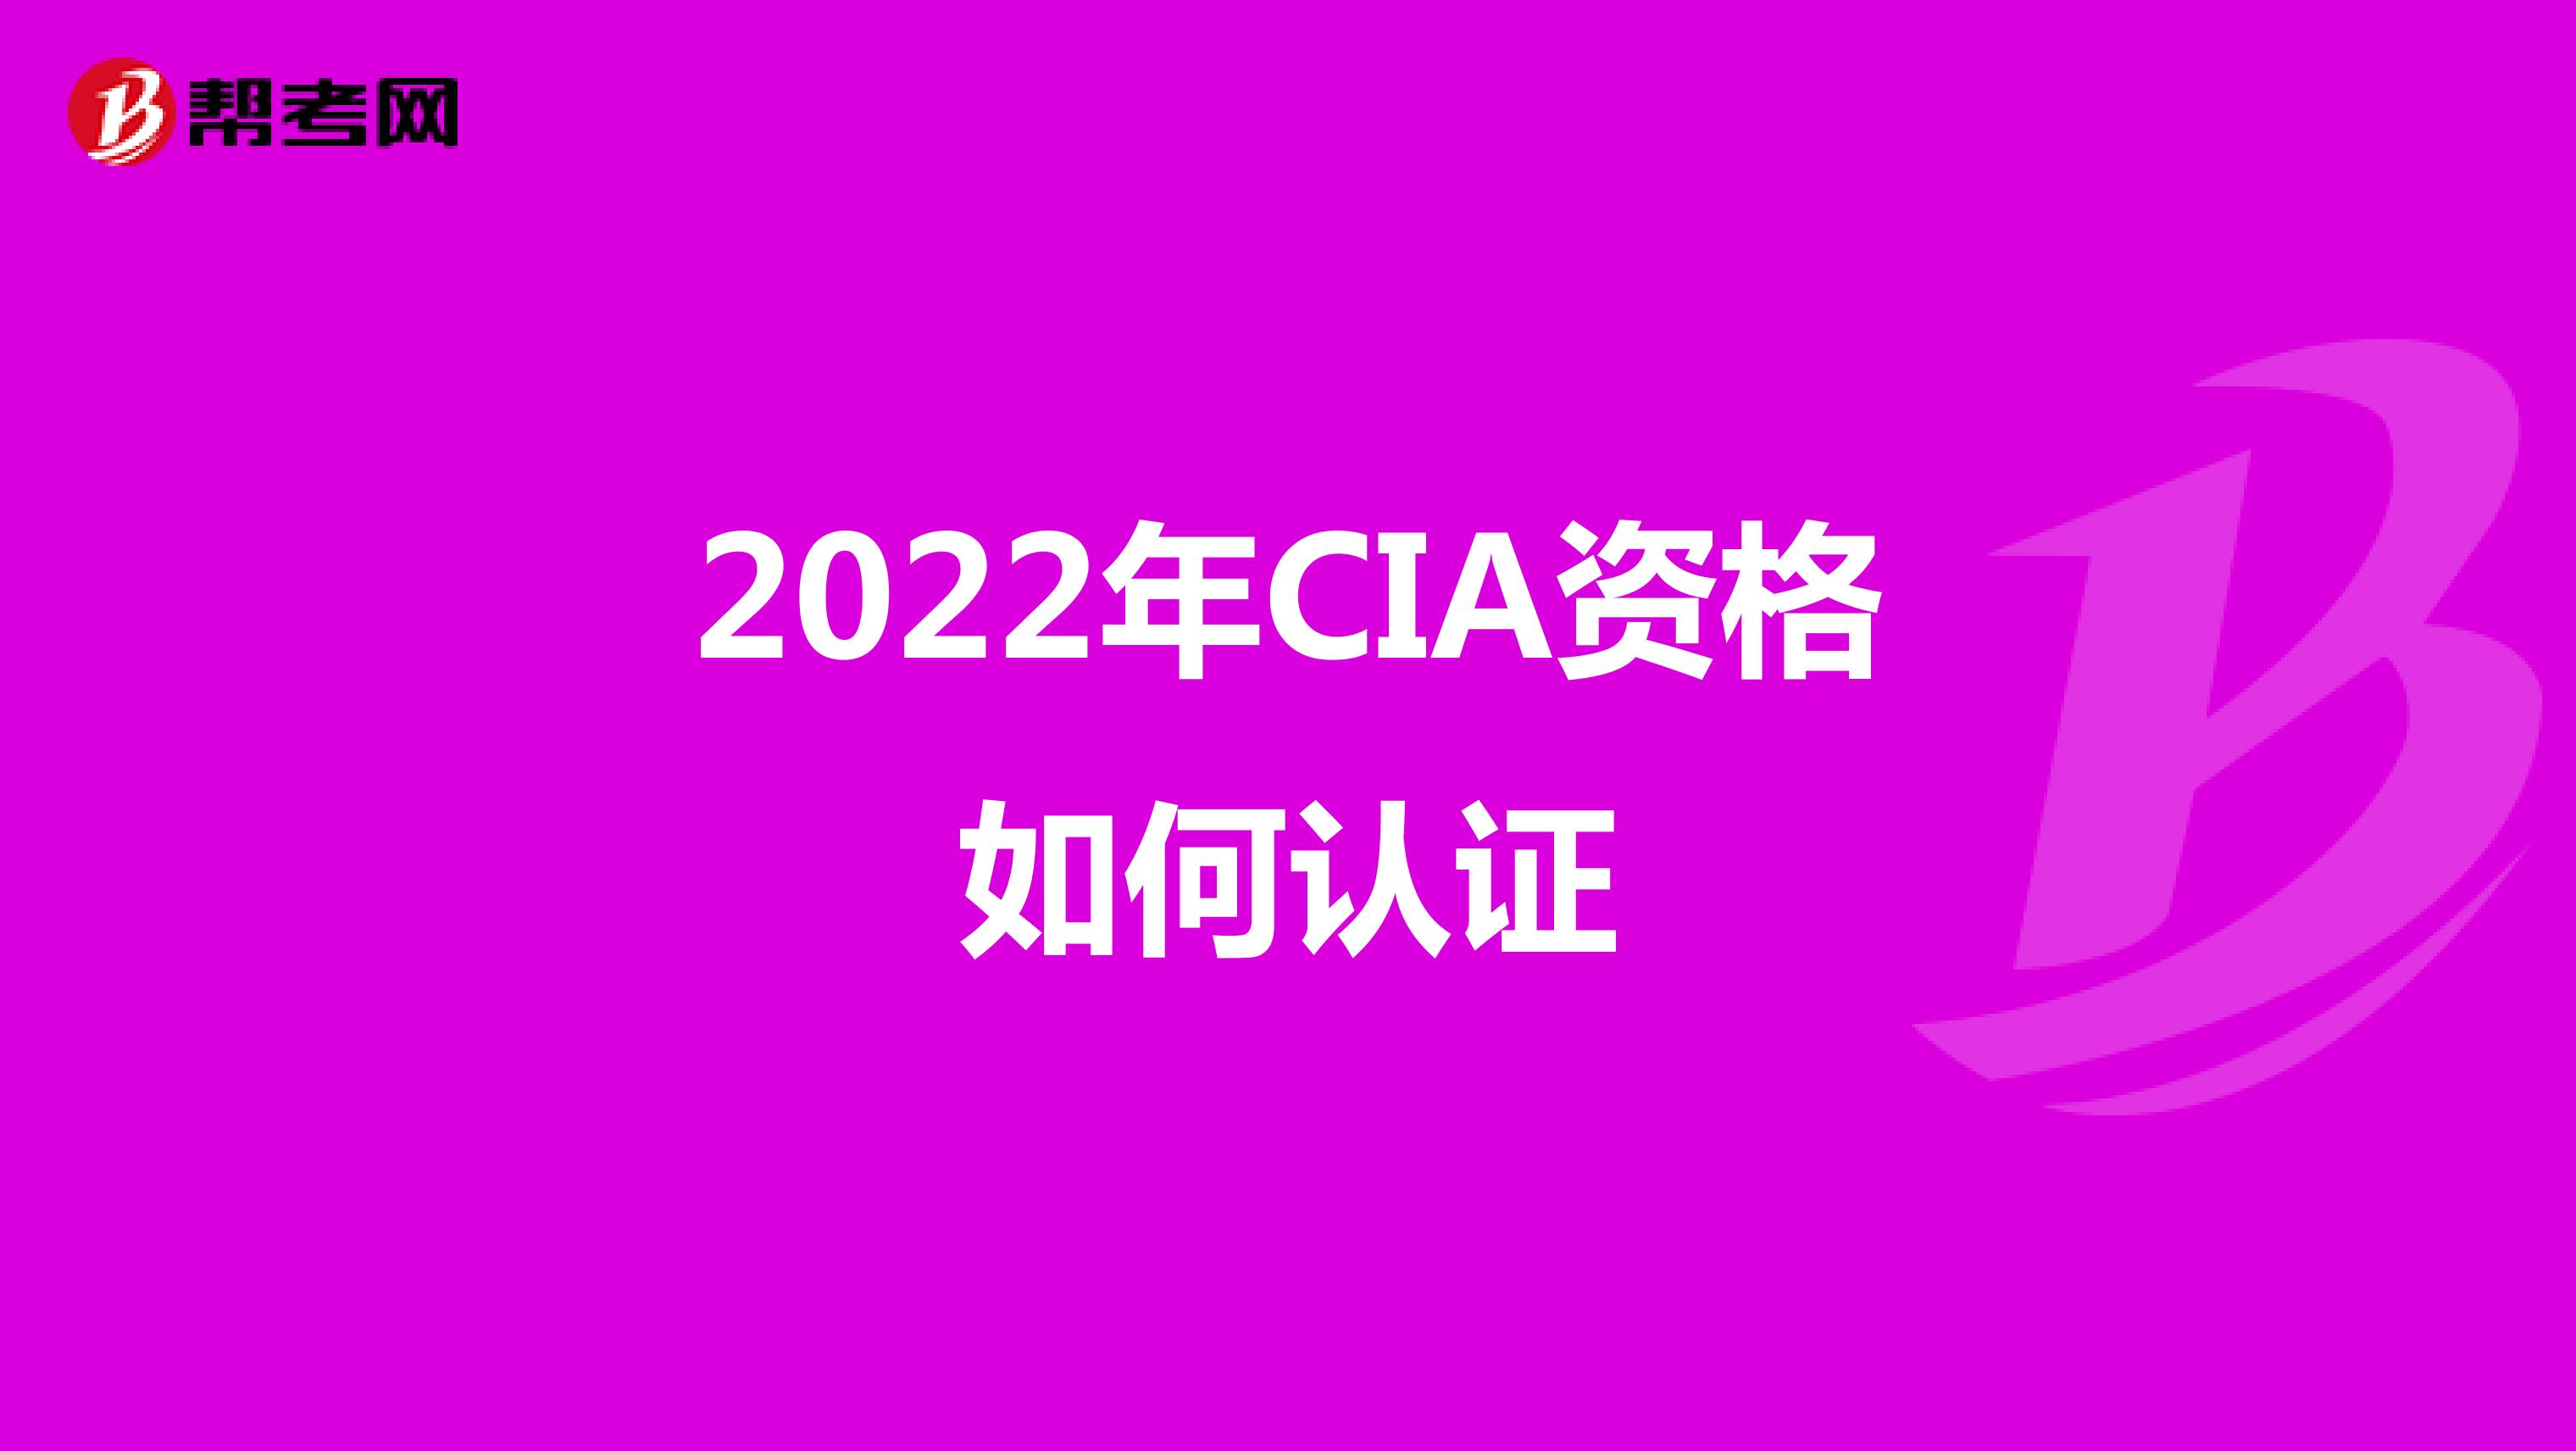 2022年CIA资格如何认证